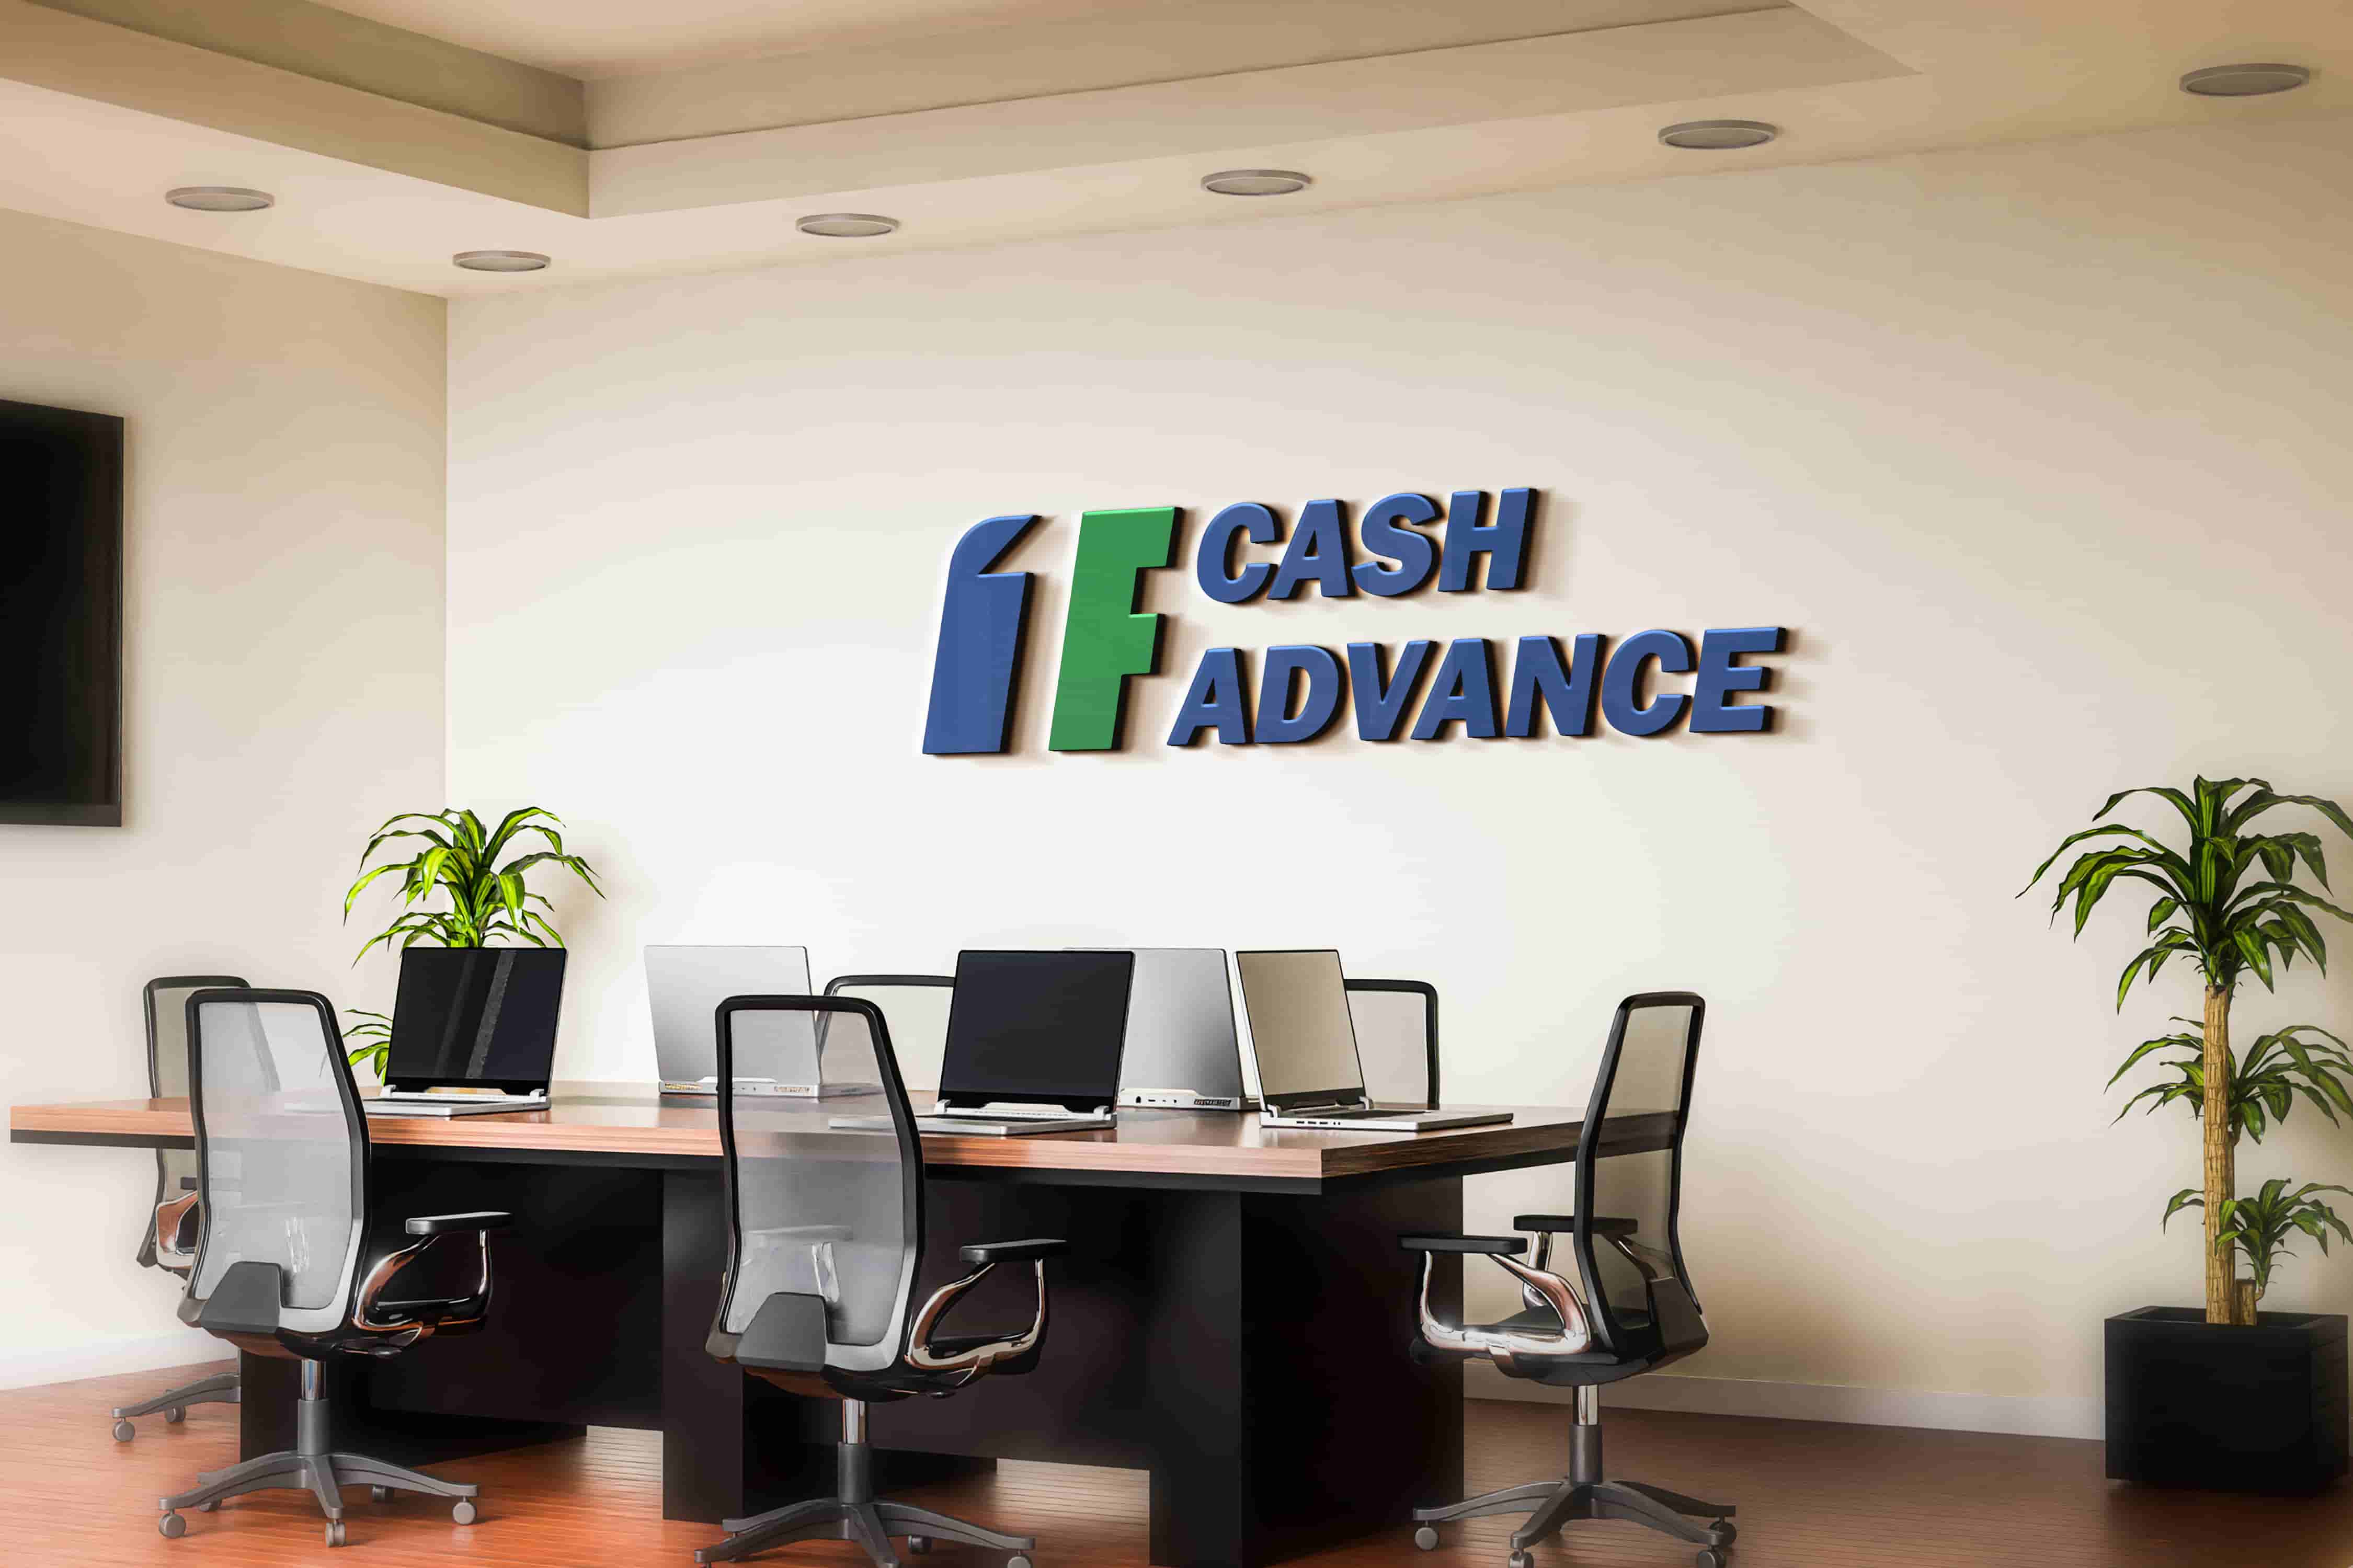 Cash advance loans in Boise, ID